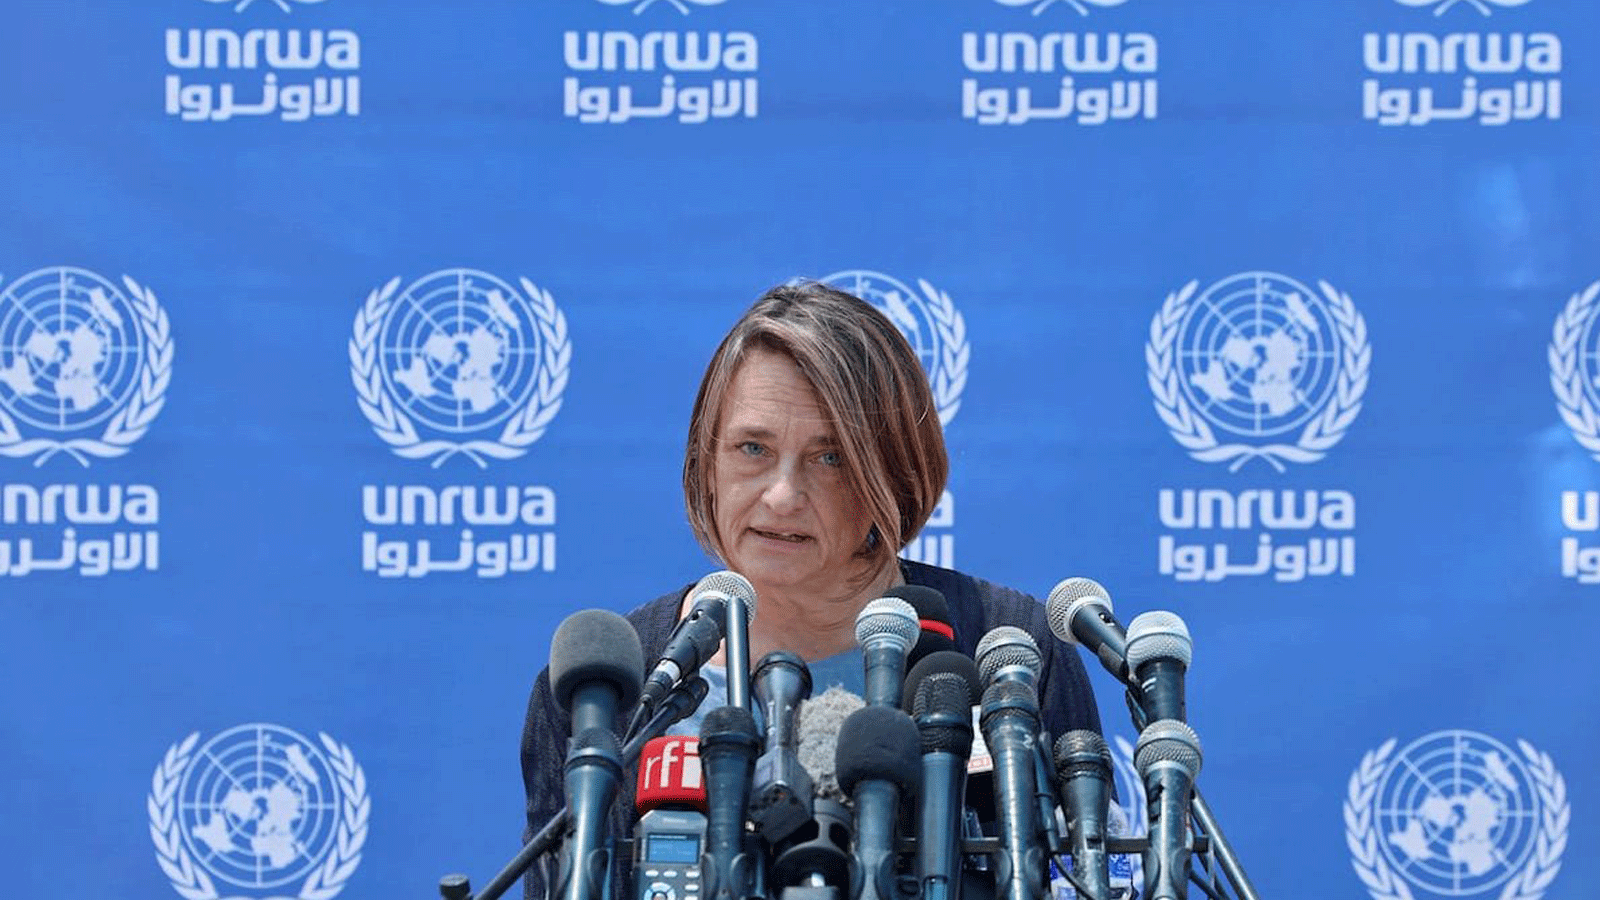 منسقة الشؤون الإنسانية في مكتب الأمم المتحدة لتنسيق الشؤون الإنسانية (UN OCHA) لين هاستينغز تتحدث خلال مؤتمر صحفي في مجمع الأمم المتحدة بمدينة غزة في 23 أيار/مايو 2021